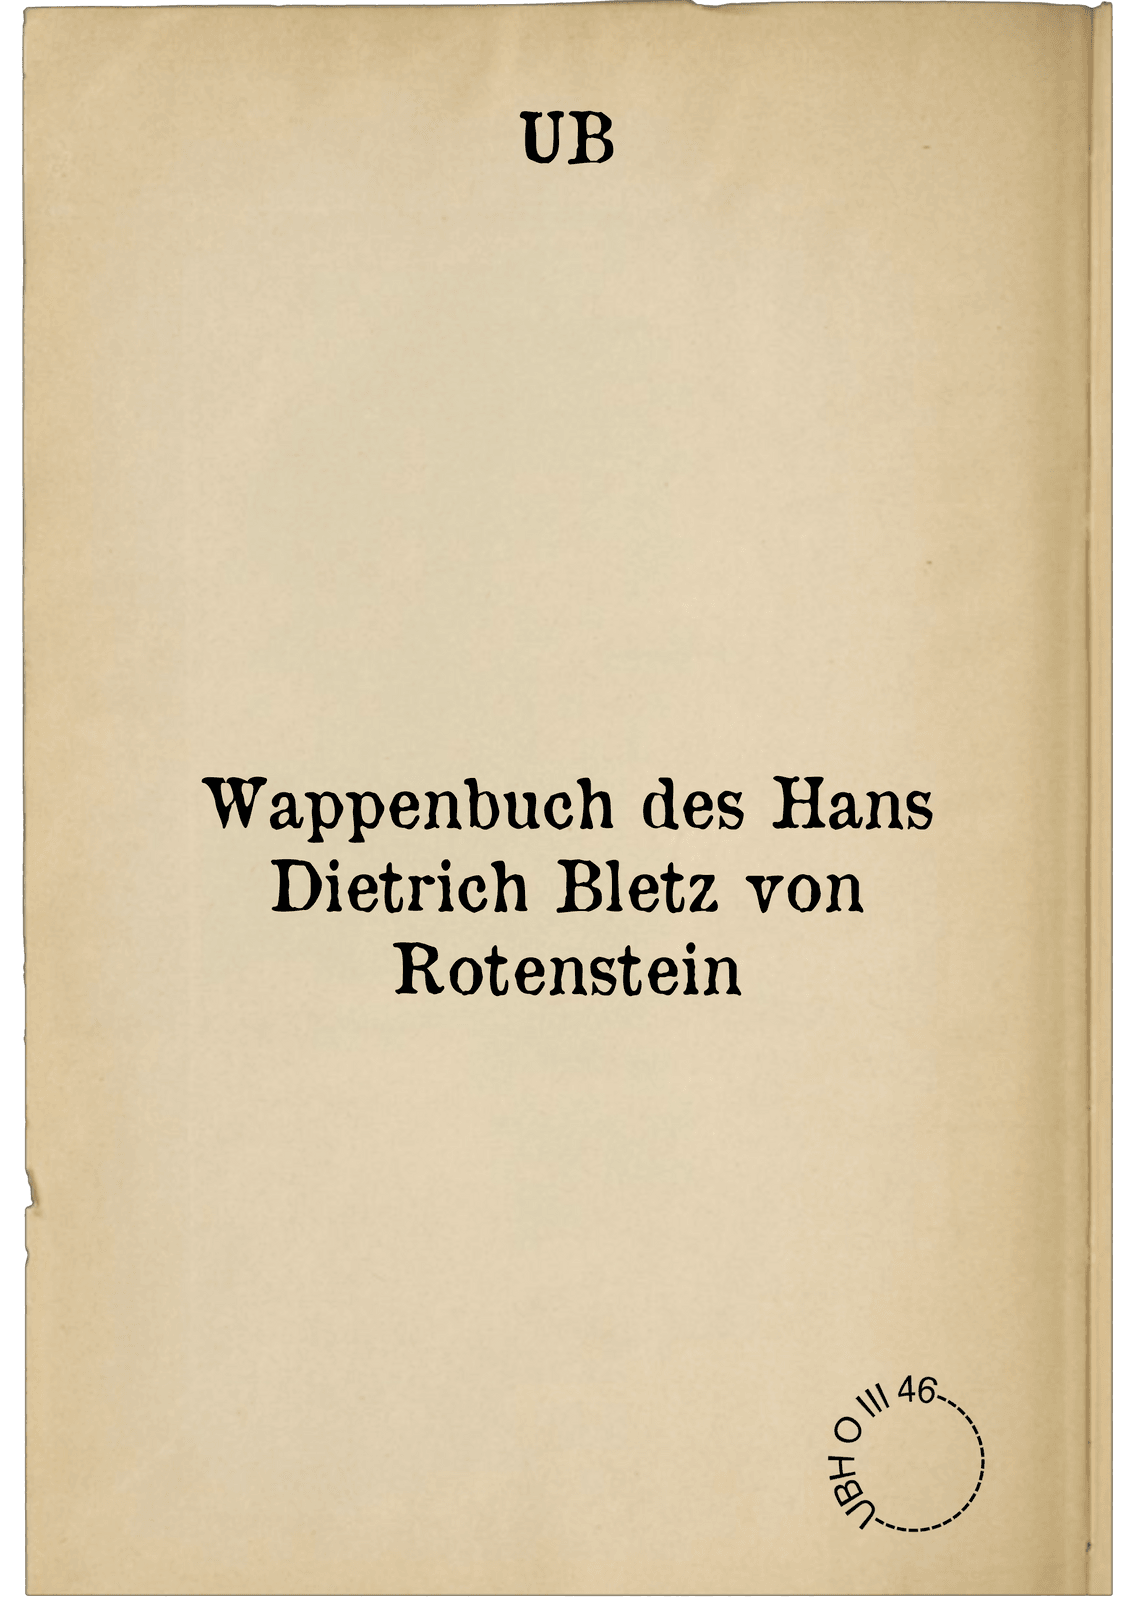 Wappenbuch des Hans Dietrich Bletz von Rotenstein